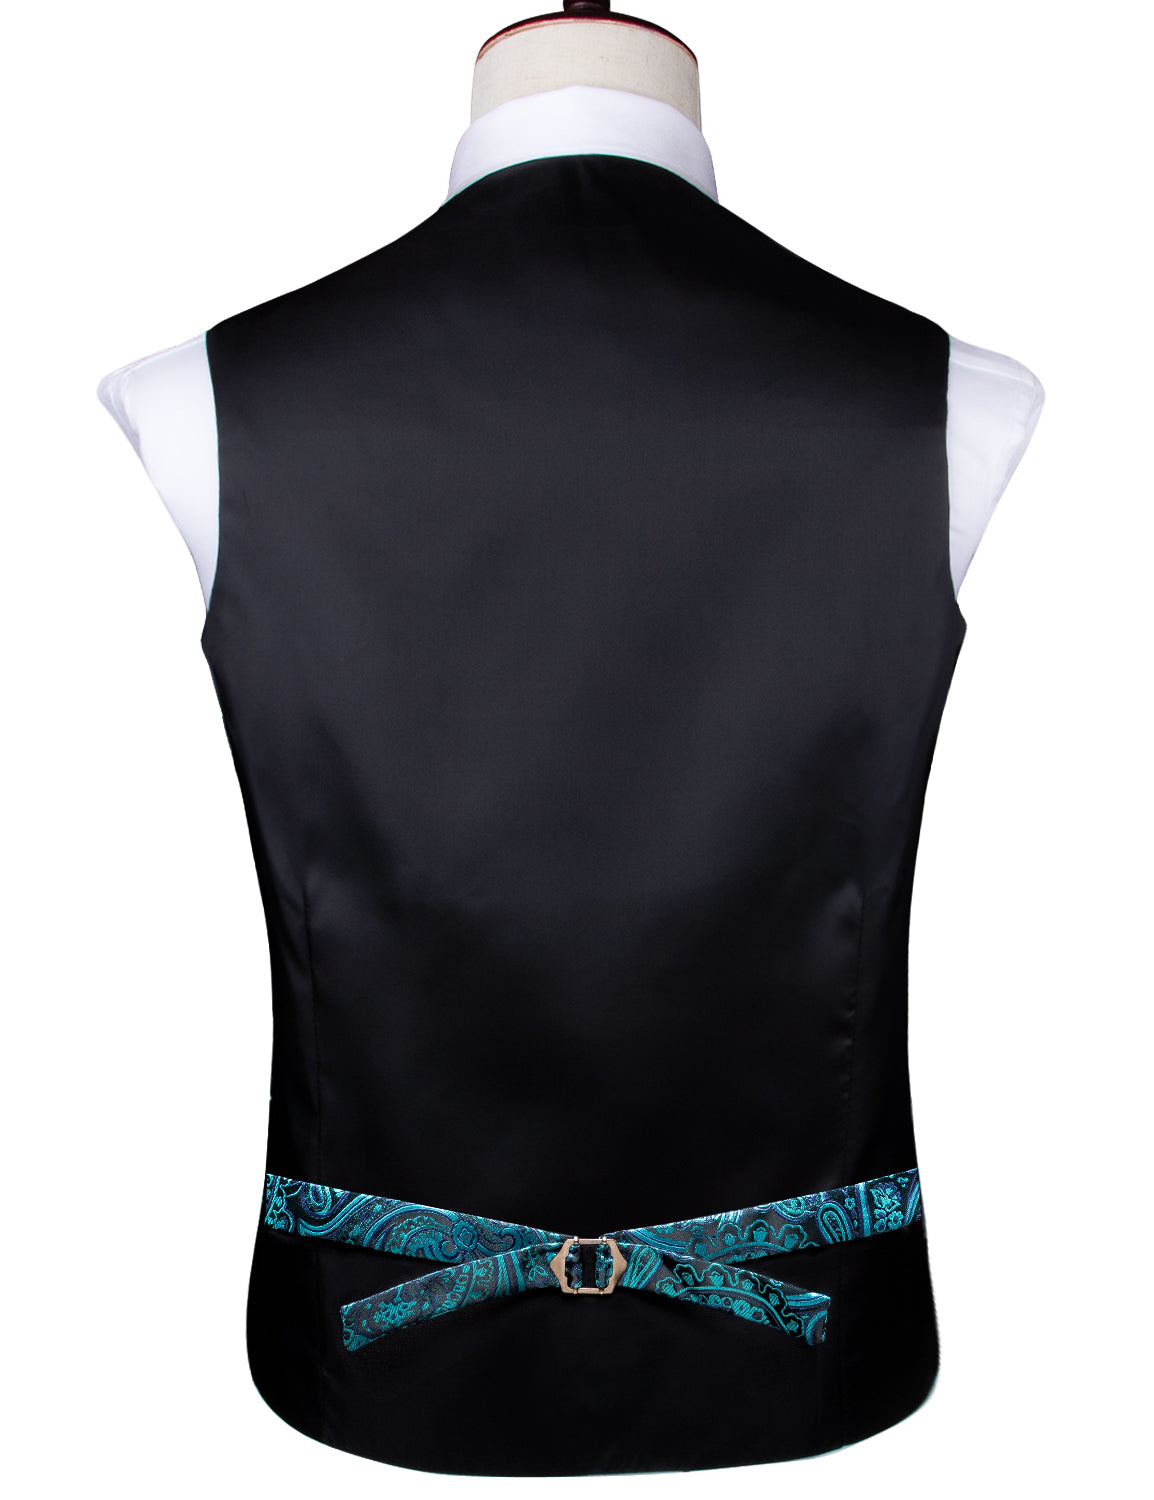 Green Paisley Silk Men's Vest Hanky Cufflinks Tie Set Waistcoat Suit Set